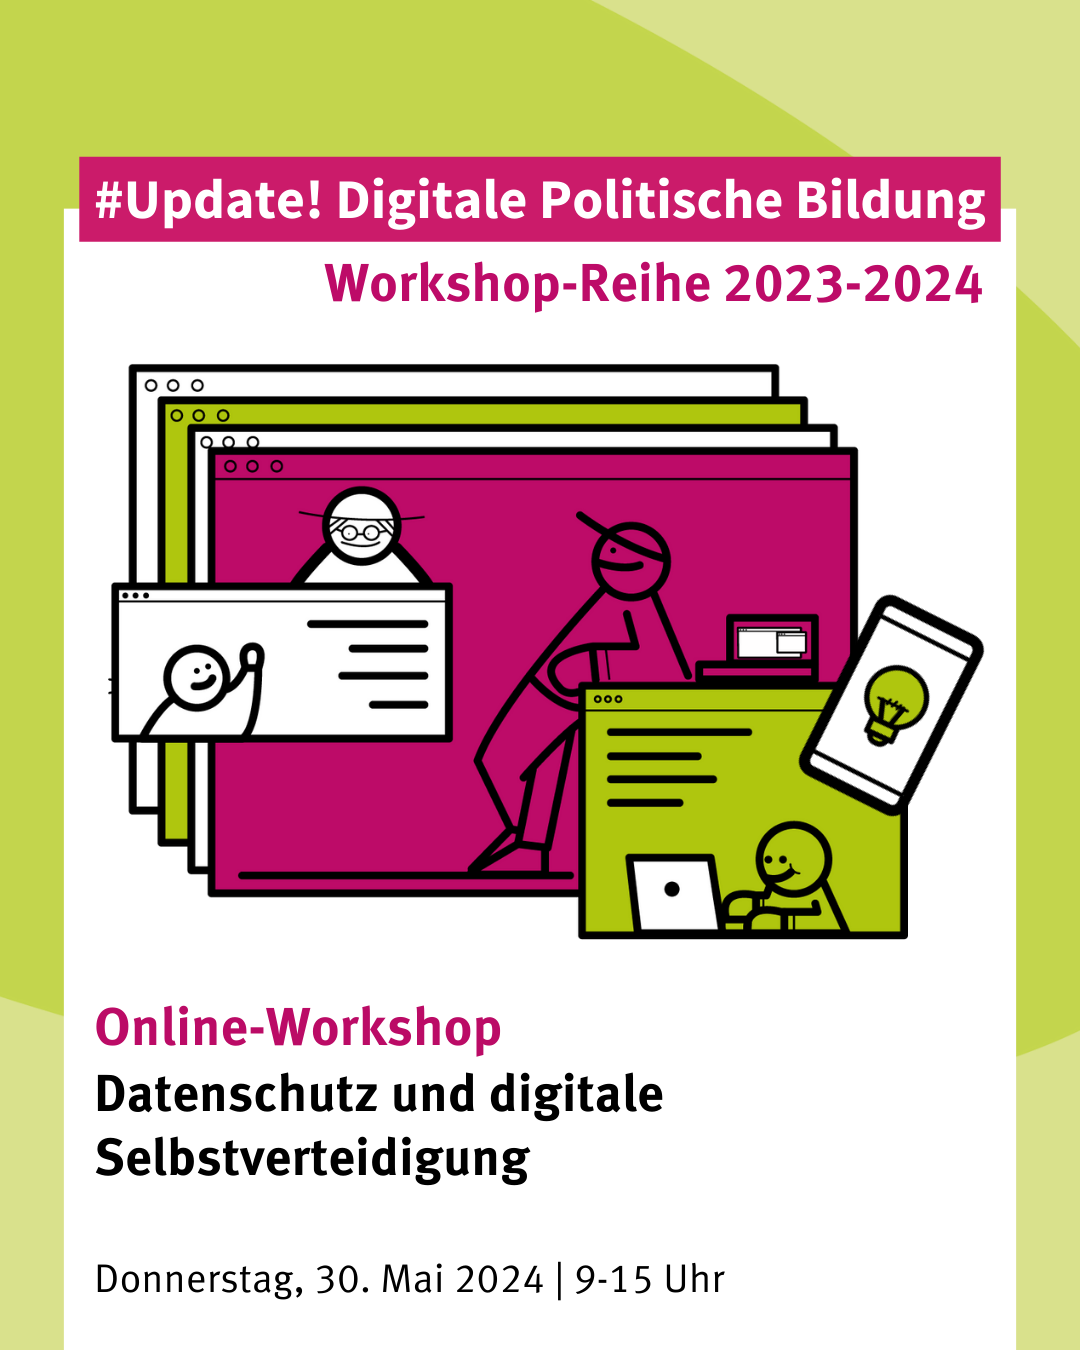 VNB-Fortbildung | Datenschutz und digitale Selbstverteidigung (Online-Workshop) am 30.05.2024 von 9-15 Uhr